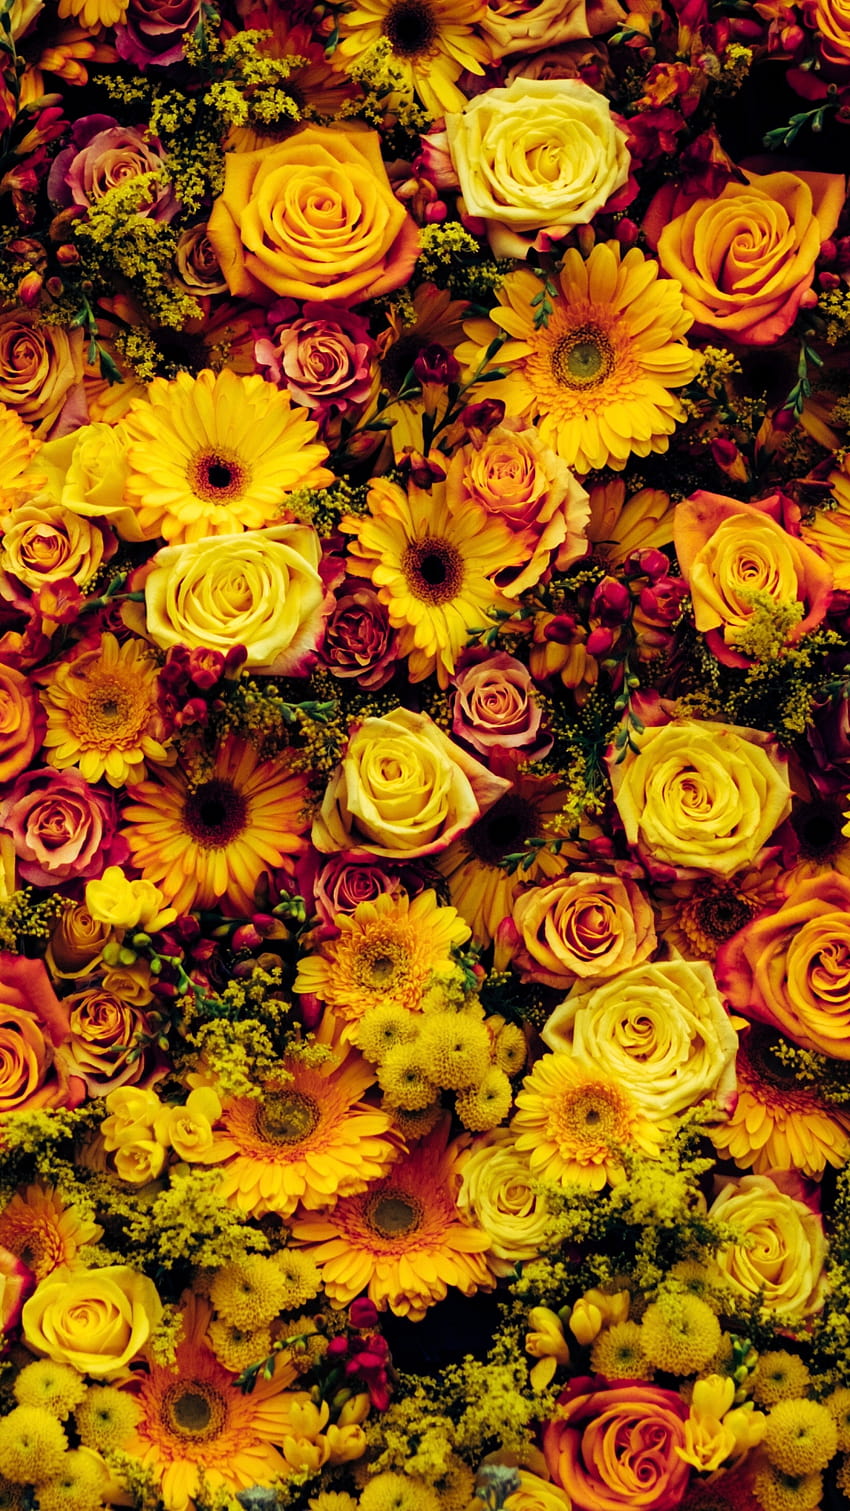 Sunflower, Cut Flowers, Flower Arranging, Spring, Flower, sunflower iphone HD phone wallpaper